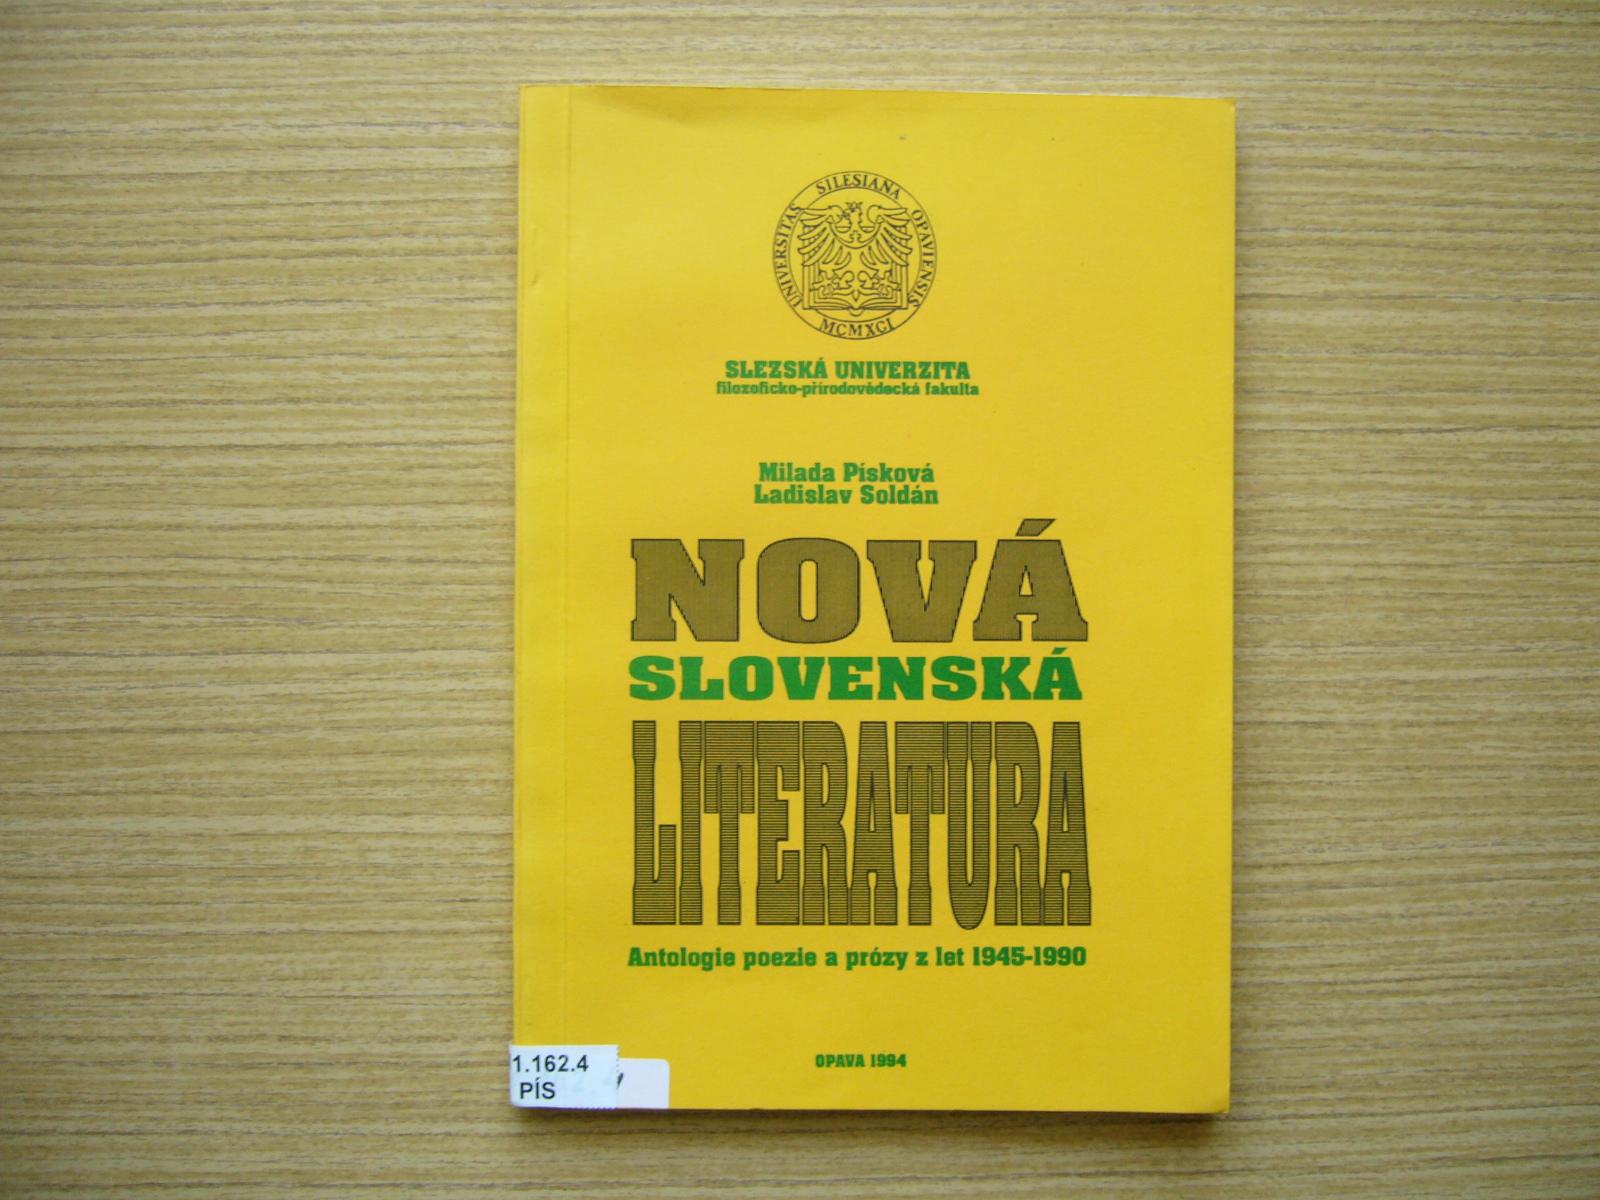 Písková, Soldán - Nová slovenská literatura | 1994 -a - Učebnice